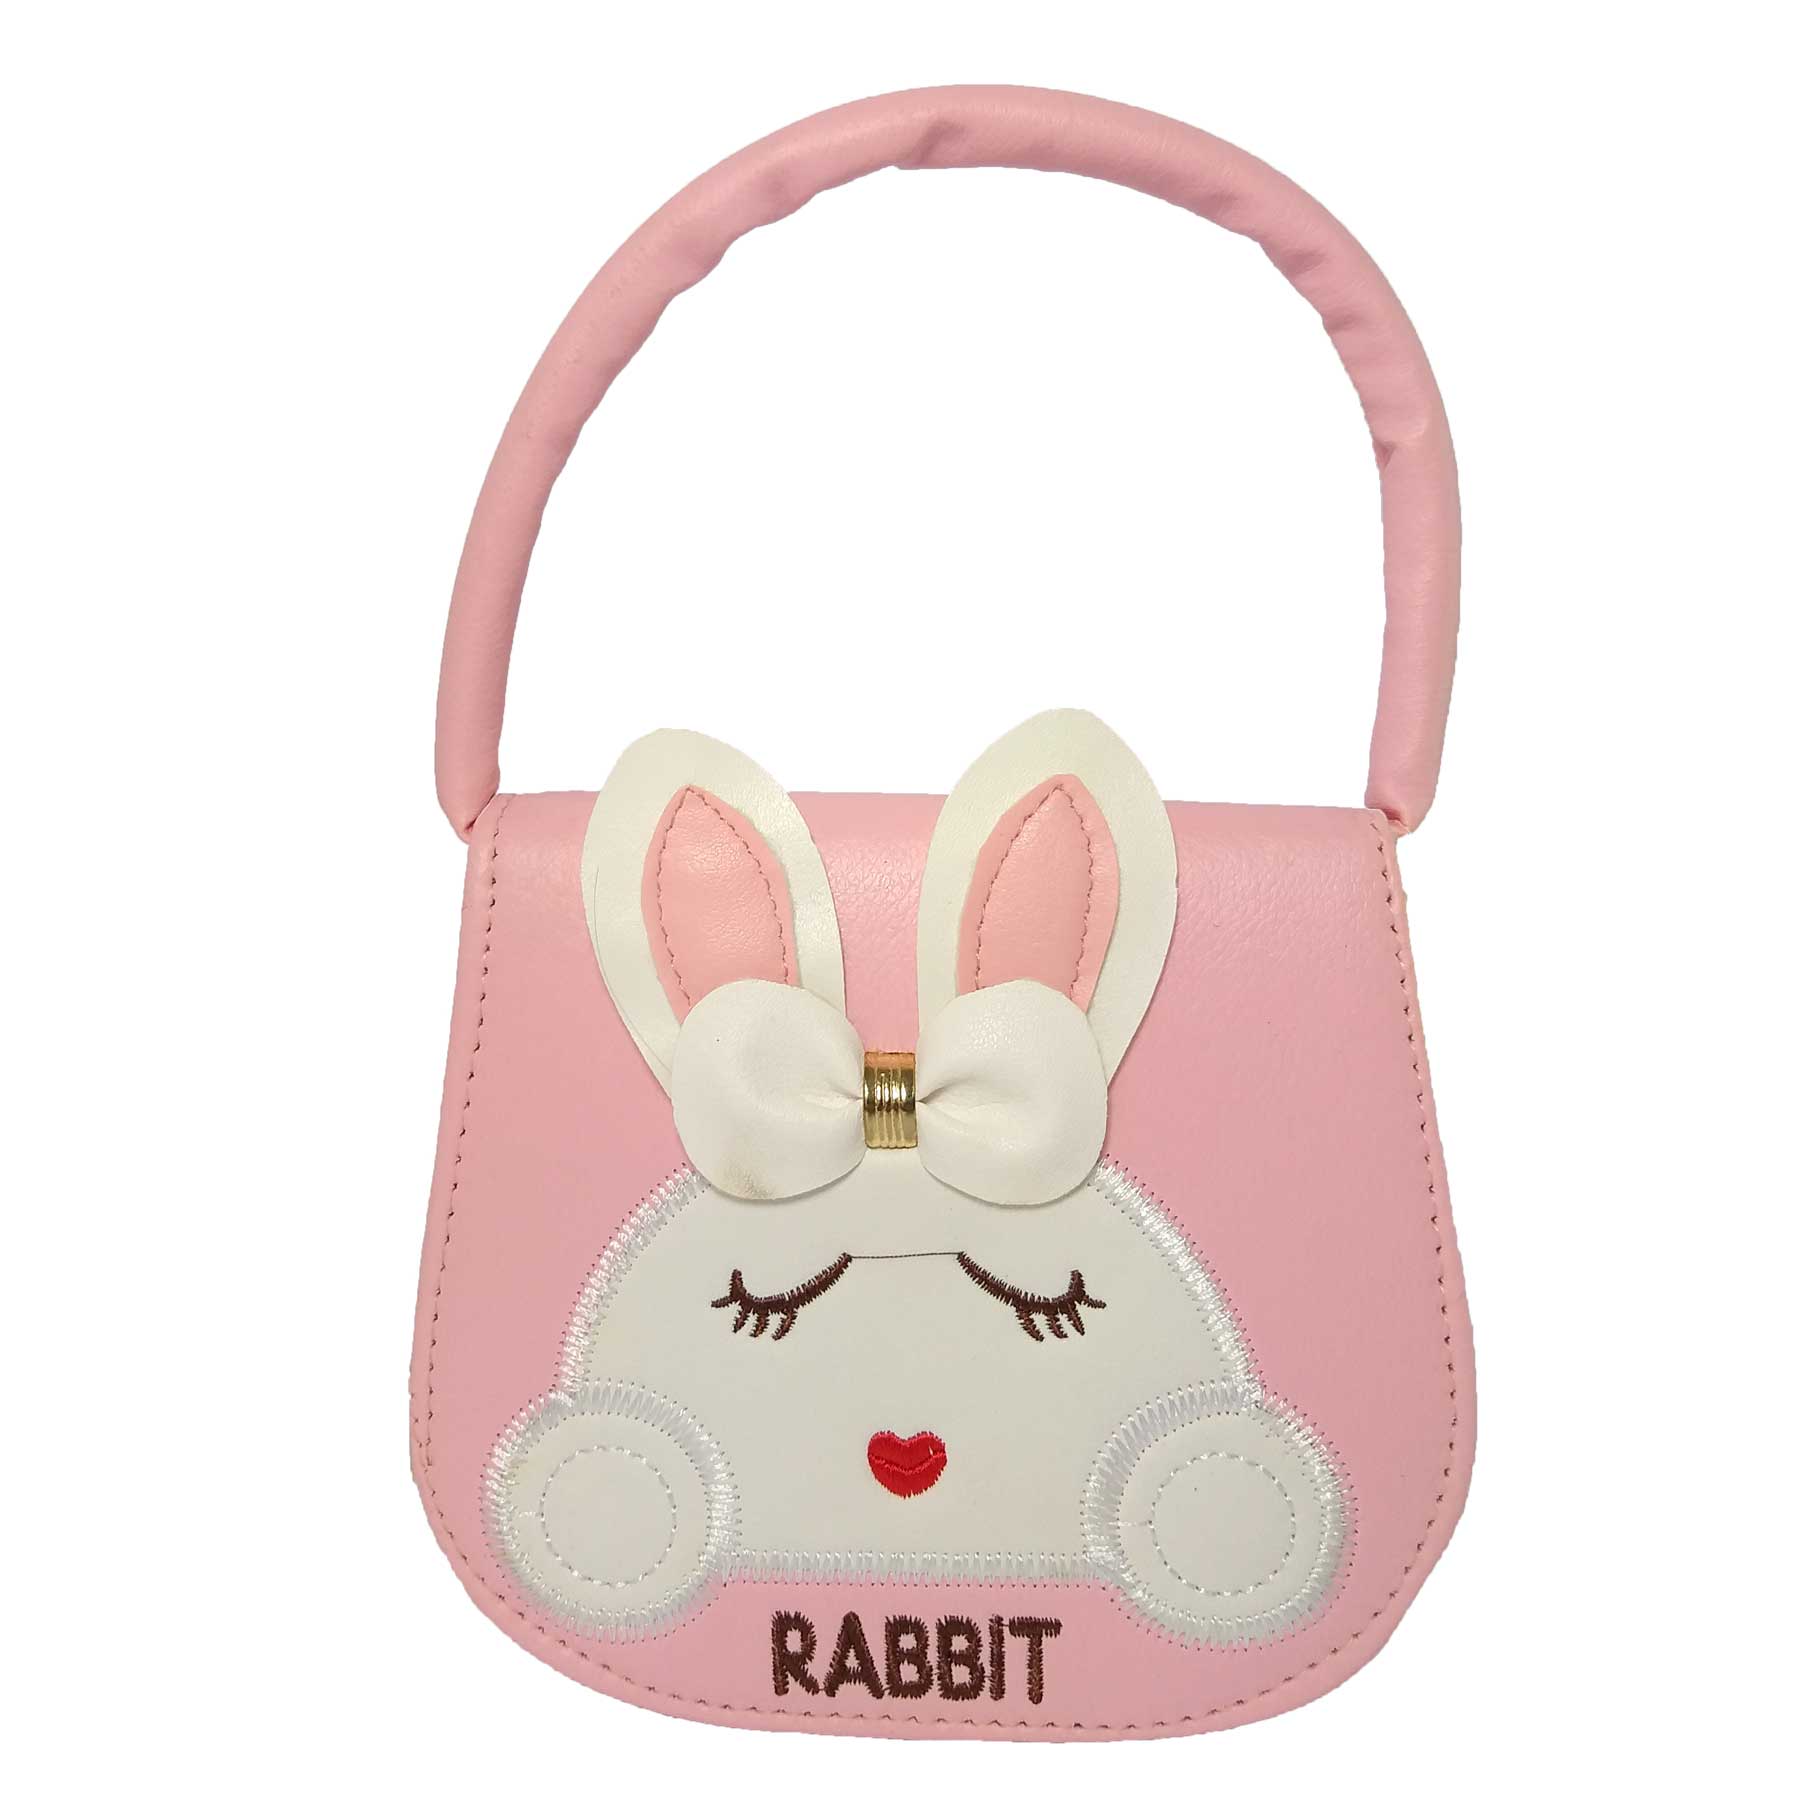 کیف دستی دخترانه طرح rabbit کد 0020